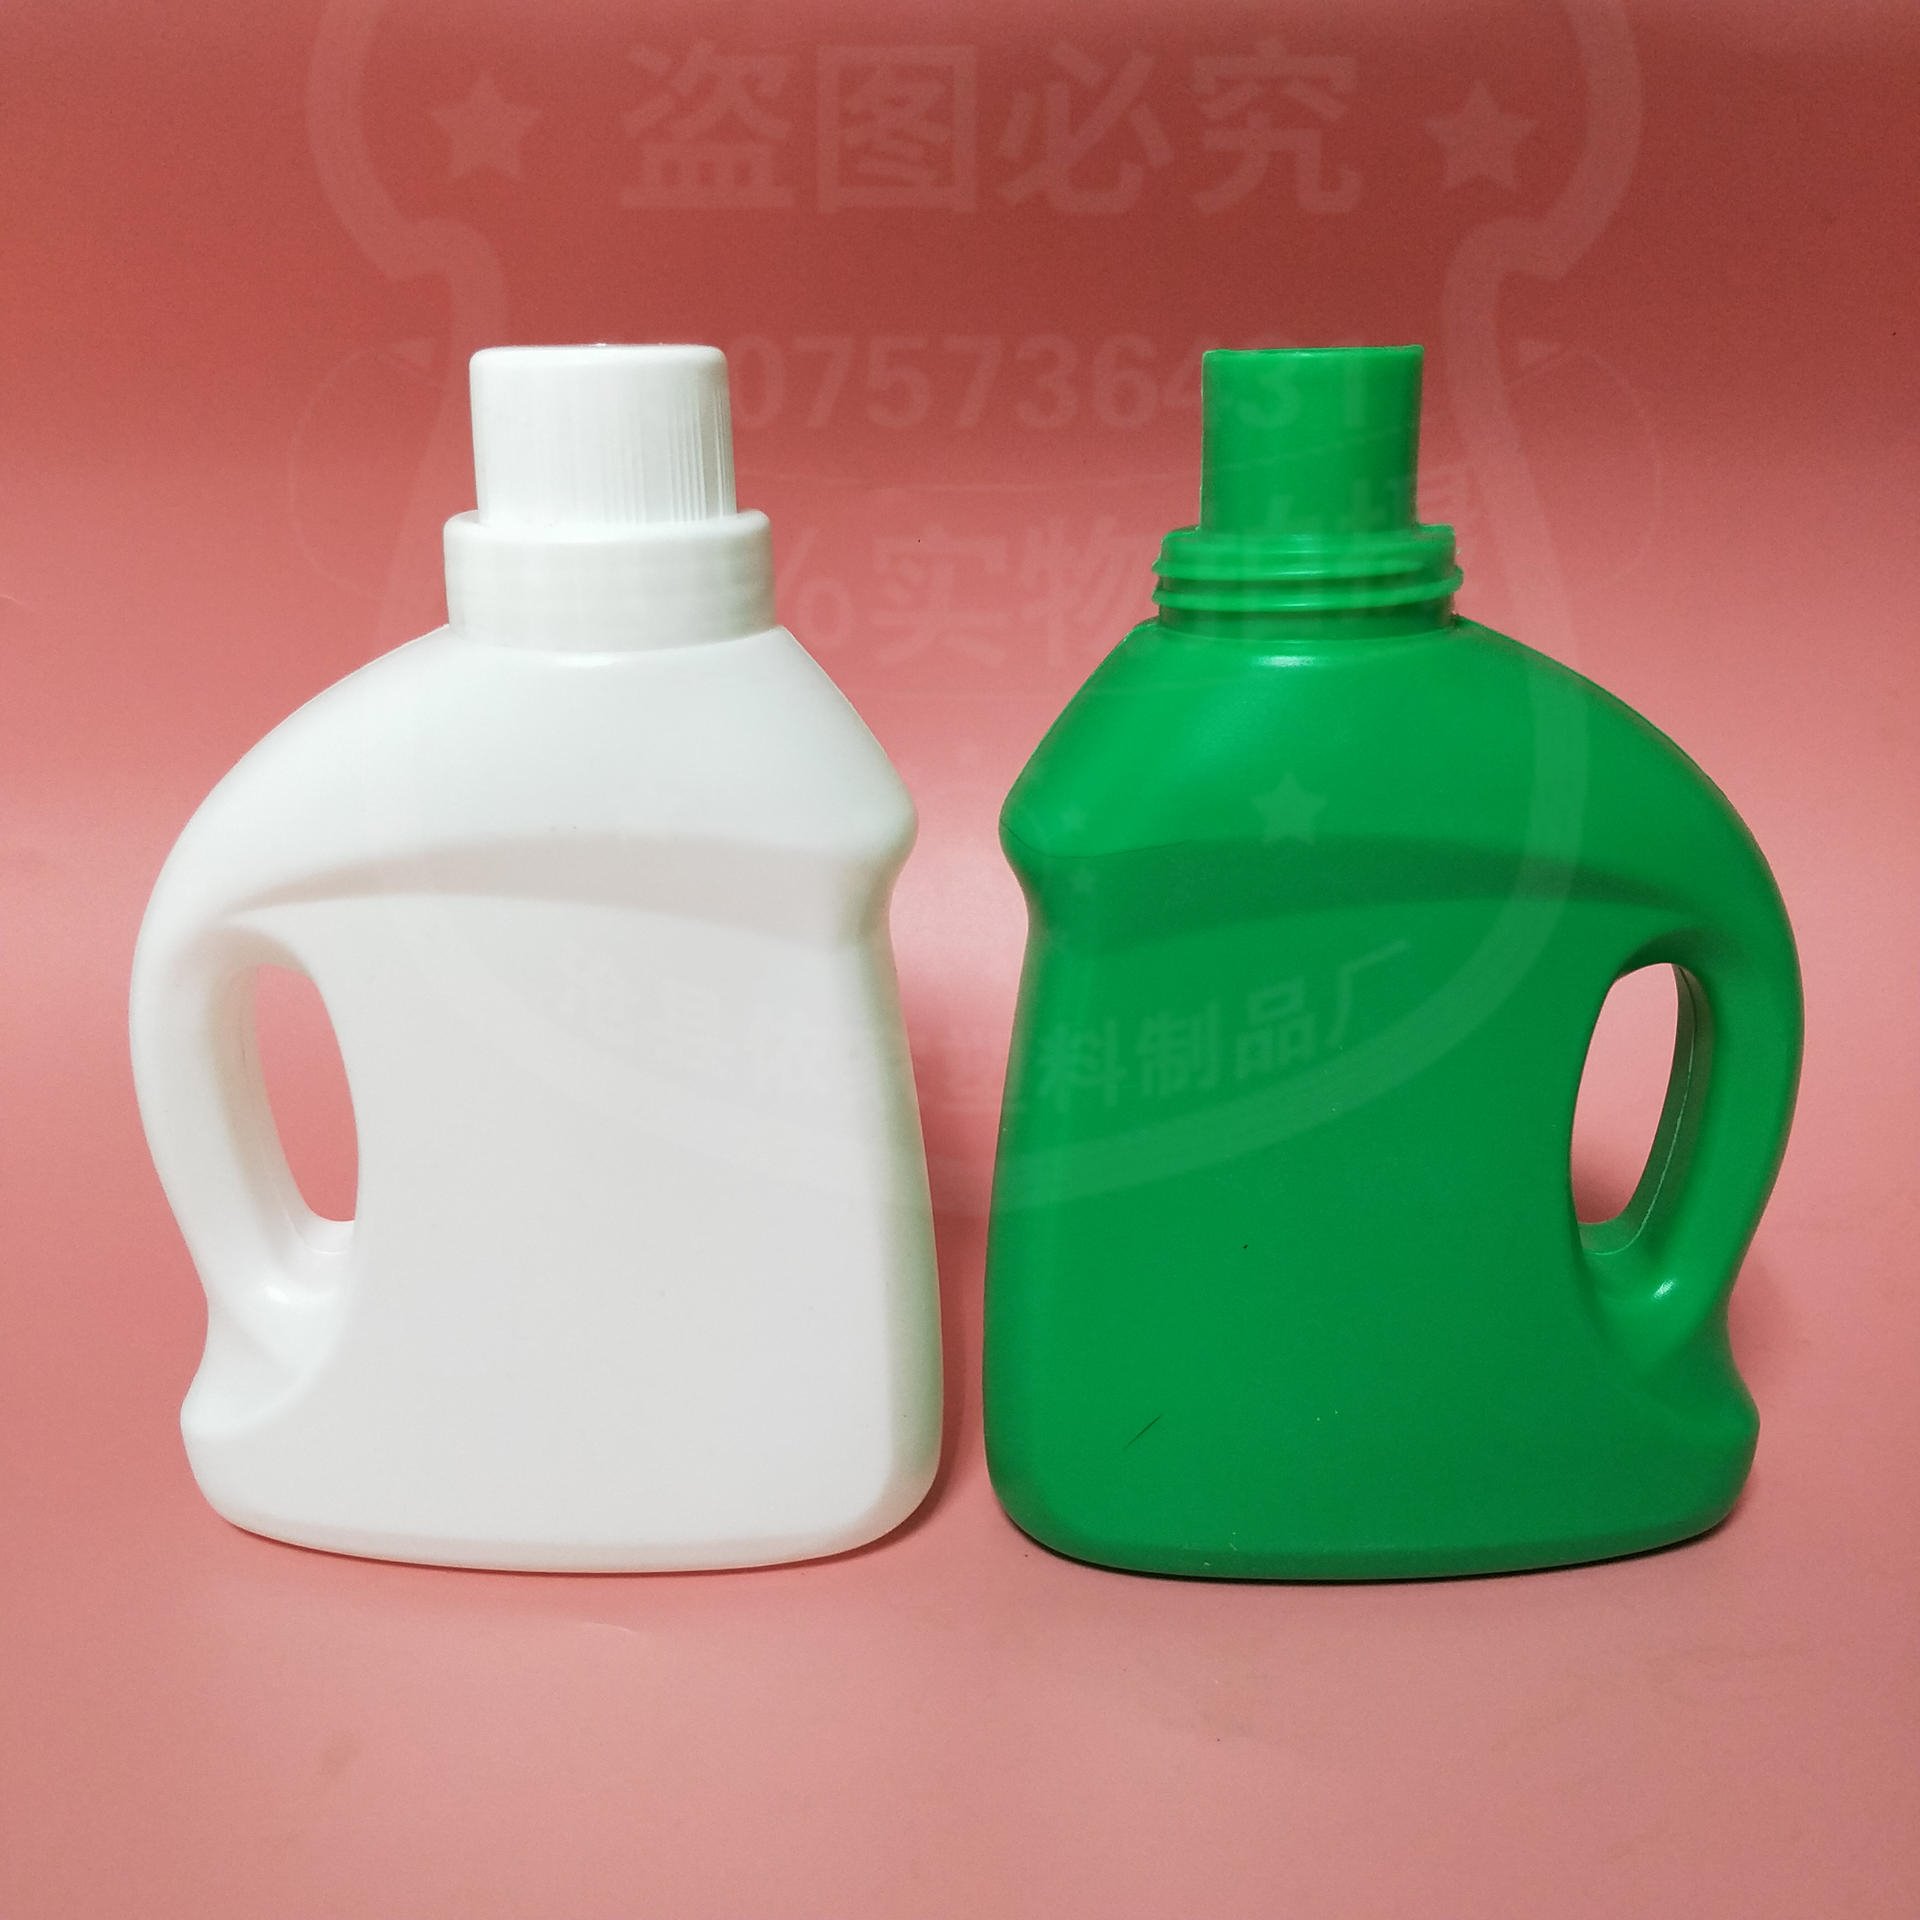 依家塑料 桶装洗衣液 批发各种塑料瓶  pe塑料包装瓶